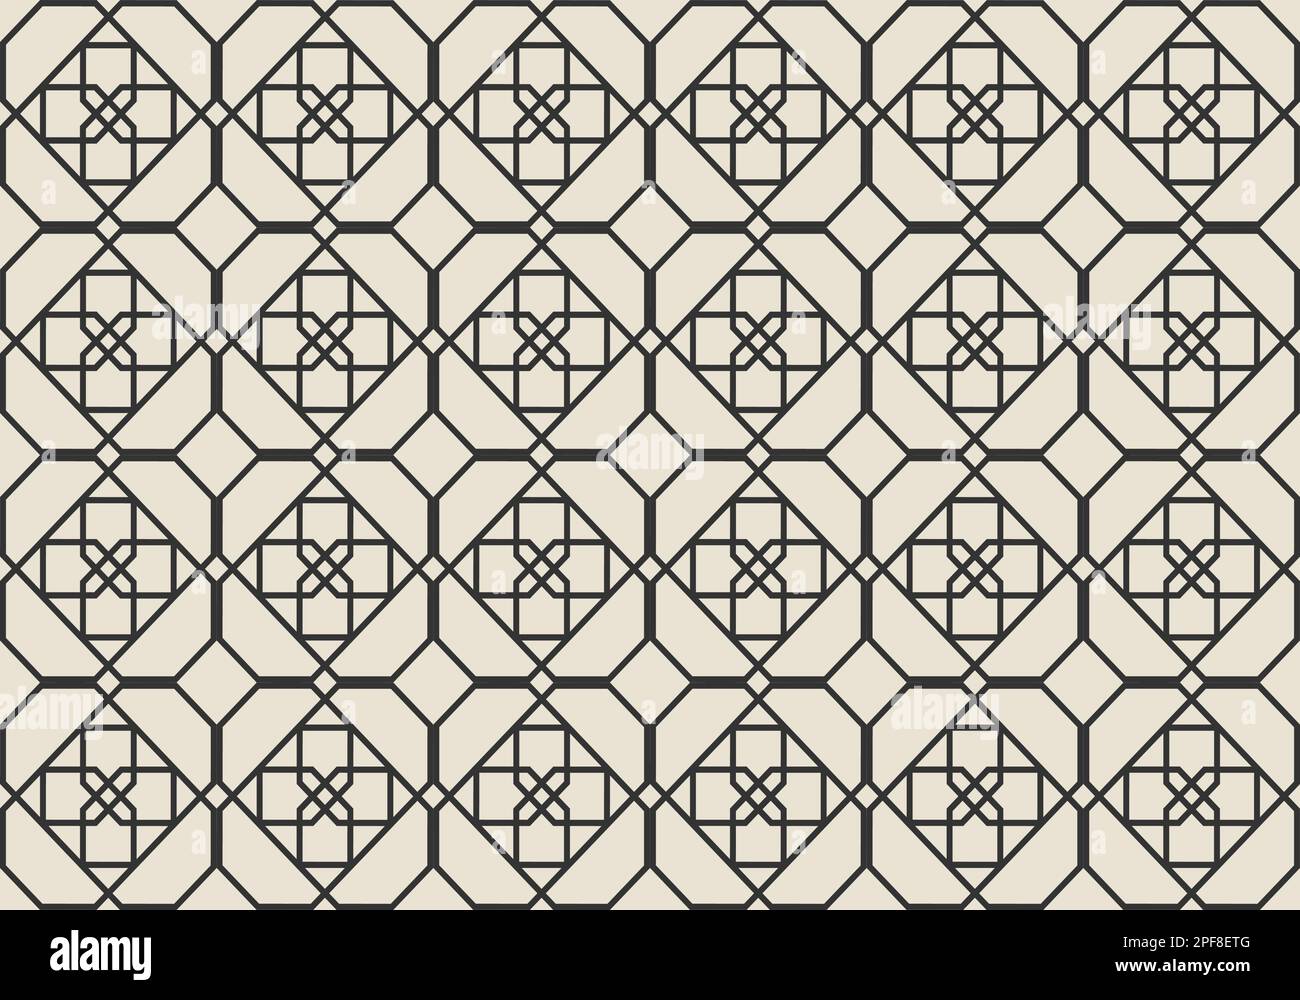 Braune Mosaikfliesen Designkunst für den Hintergrund. Nahtloses Muster. Mosaik. Geometrie. Grafische Konstruktion Von Vektordarstellungen. Stock Vektor